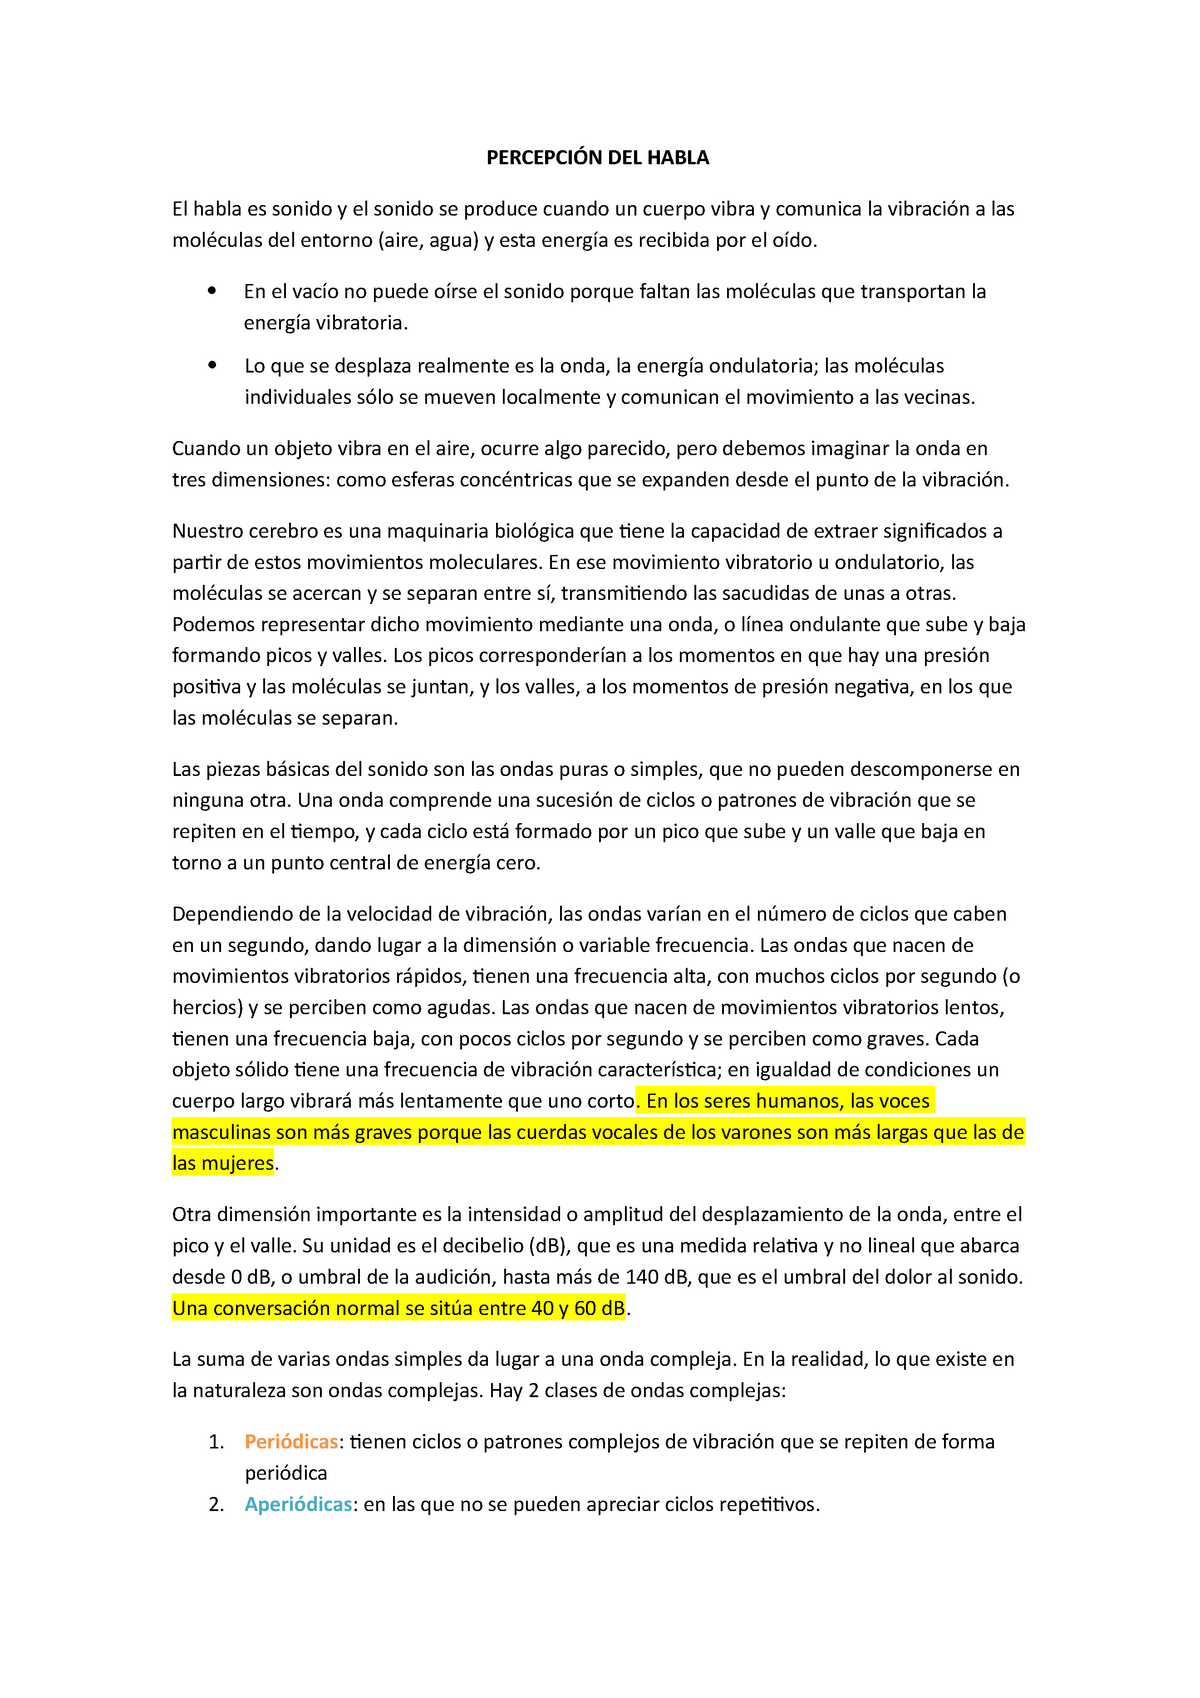 L5 Percepción Del Habla Del Libro De Psicología Del Lenguaje Cuetos González Y De Vega 2015 5627